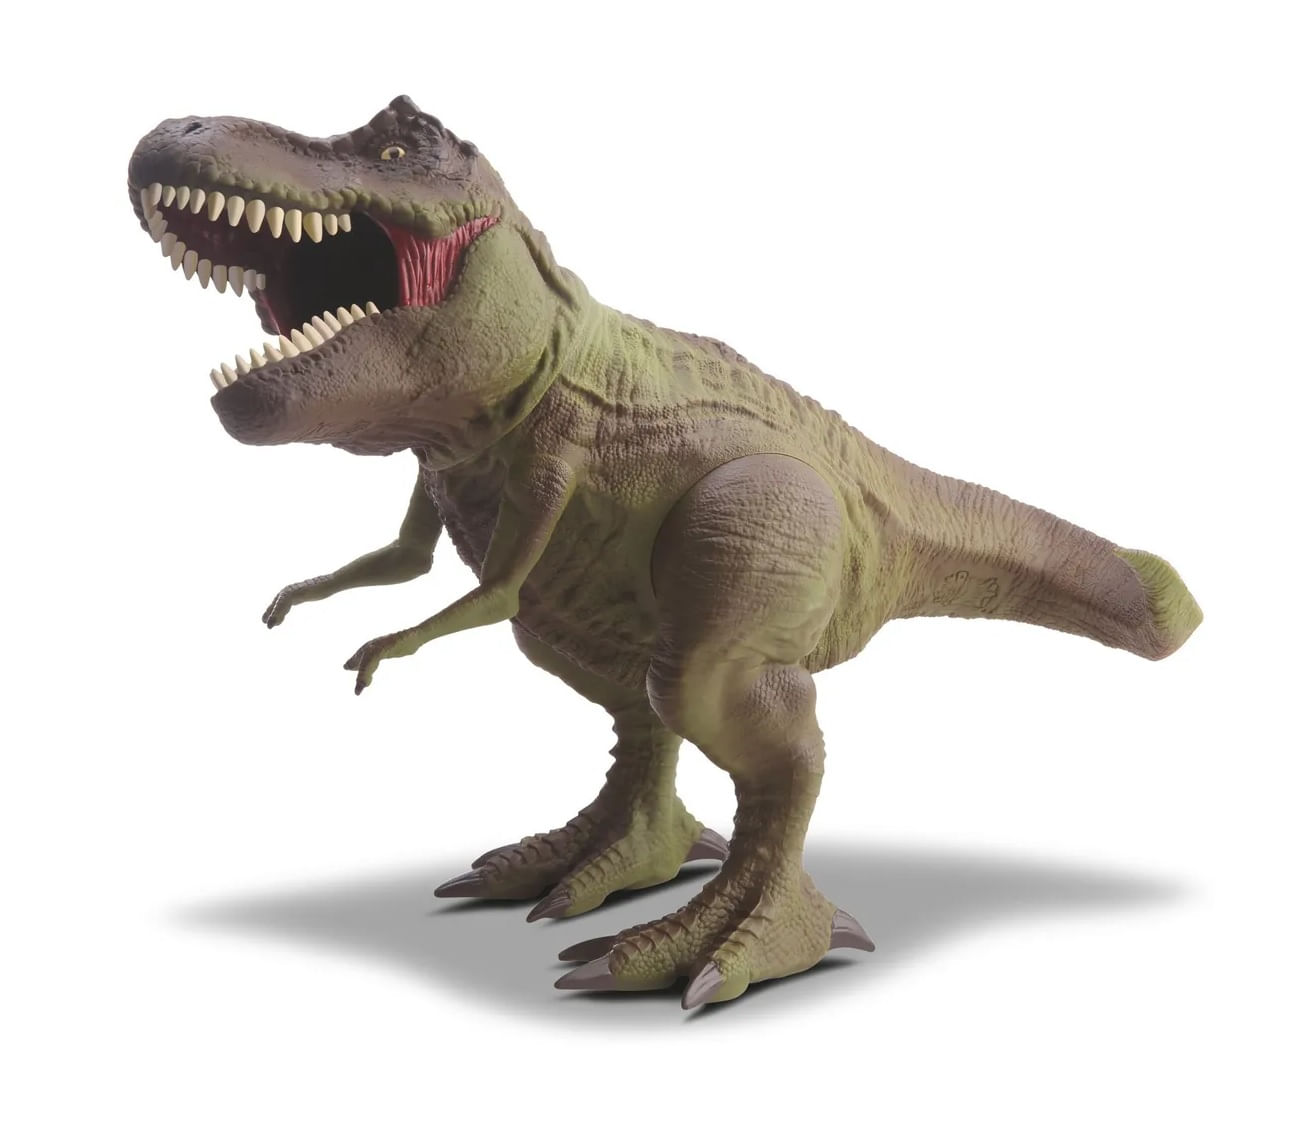 Dinossauros Infantil Avulso TREX-VERDE, TREX-MARROM, ESTEGOSSAURO,  BRANQUIOSSAURO Dino World BBR TOYS em Promoção na Americanas